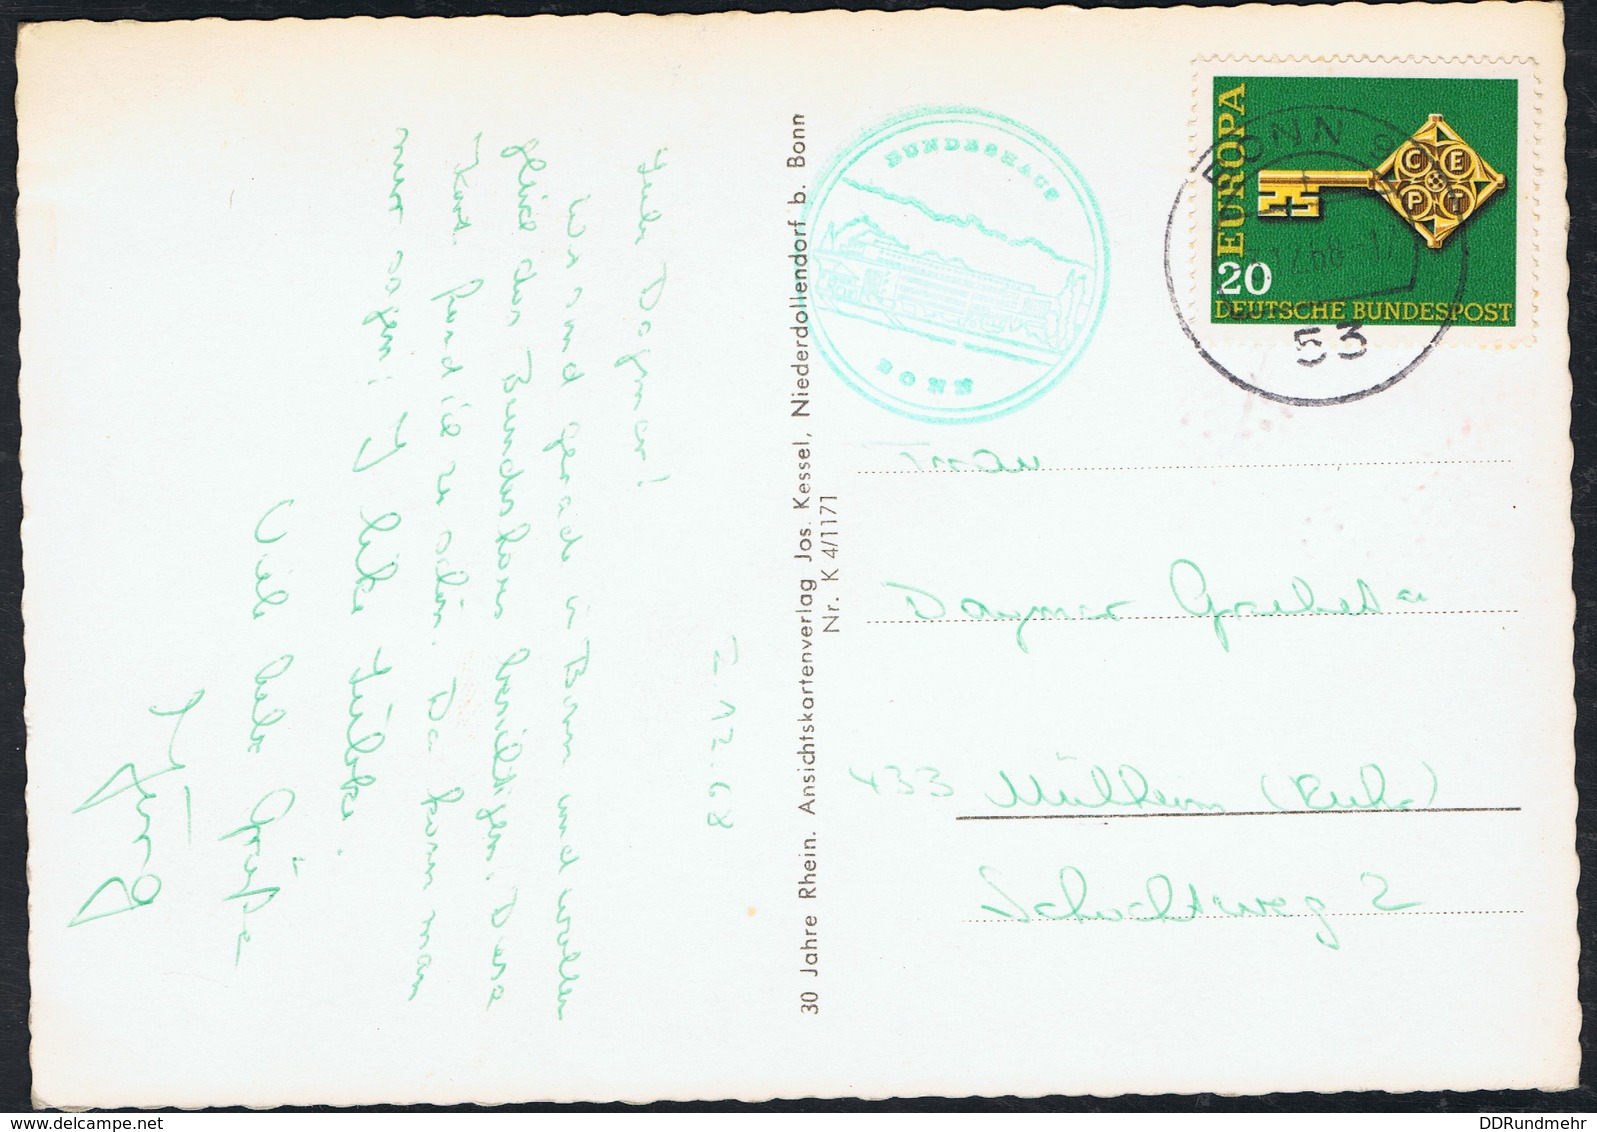 Postkarte Bundespräsident Heinz Lübke Von 1968 Siehe Scan - Historische Persönlichkeiten